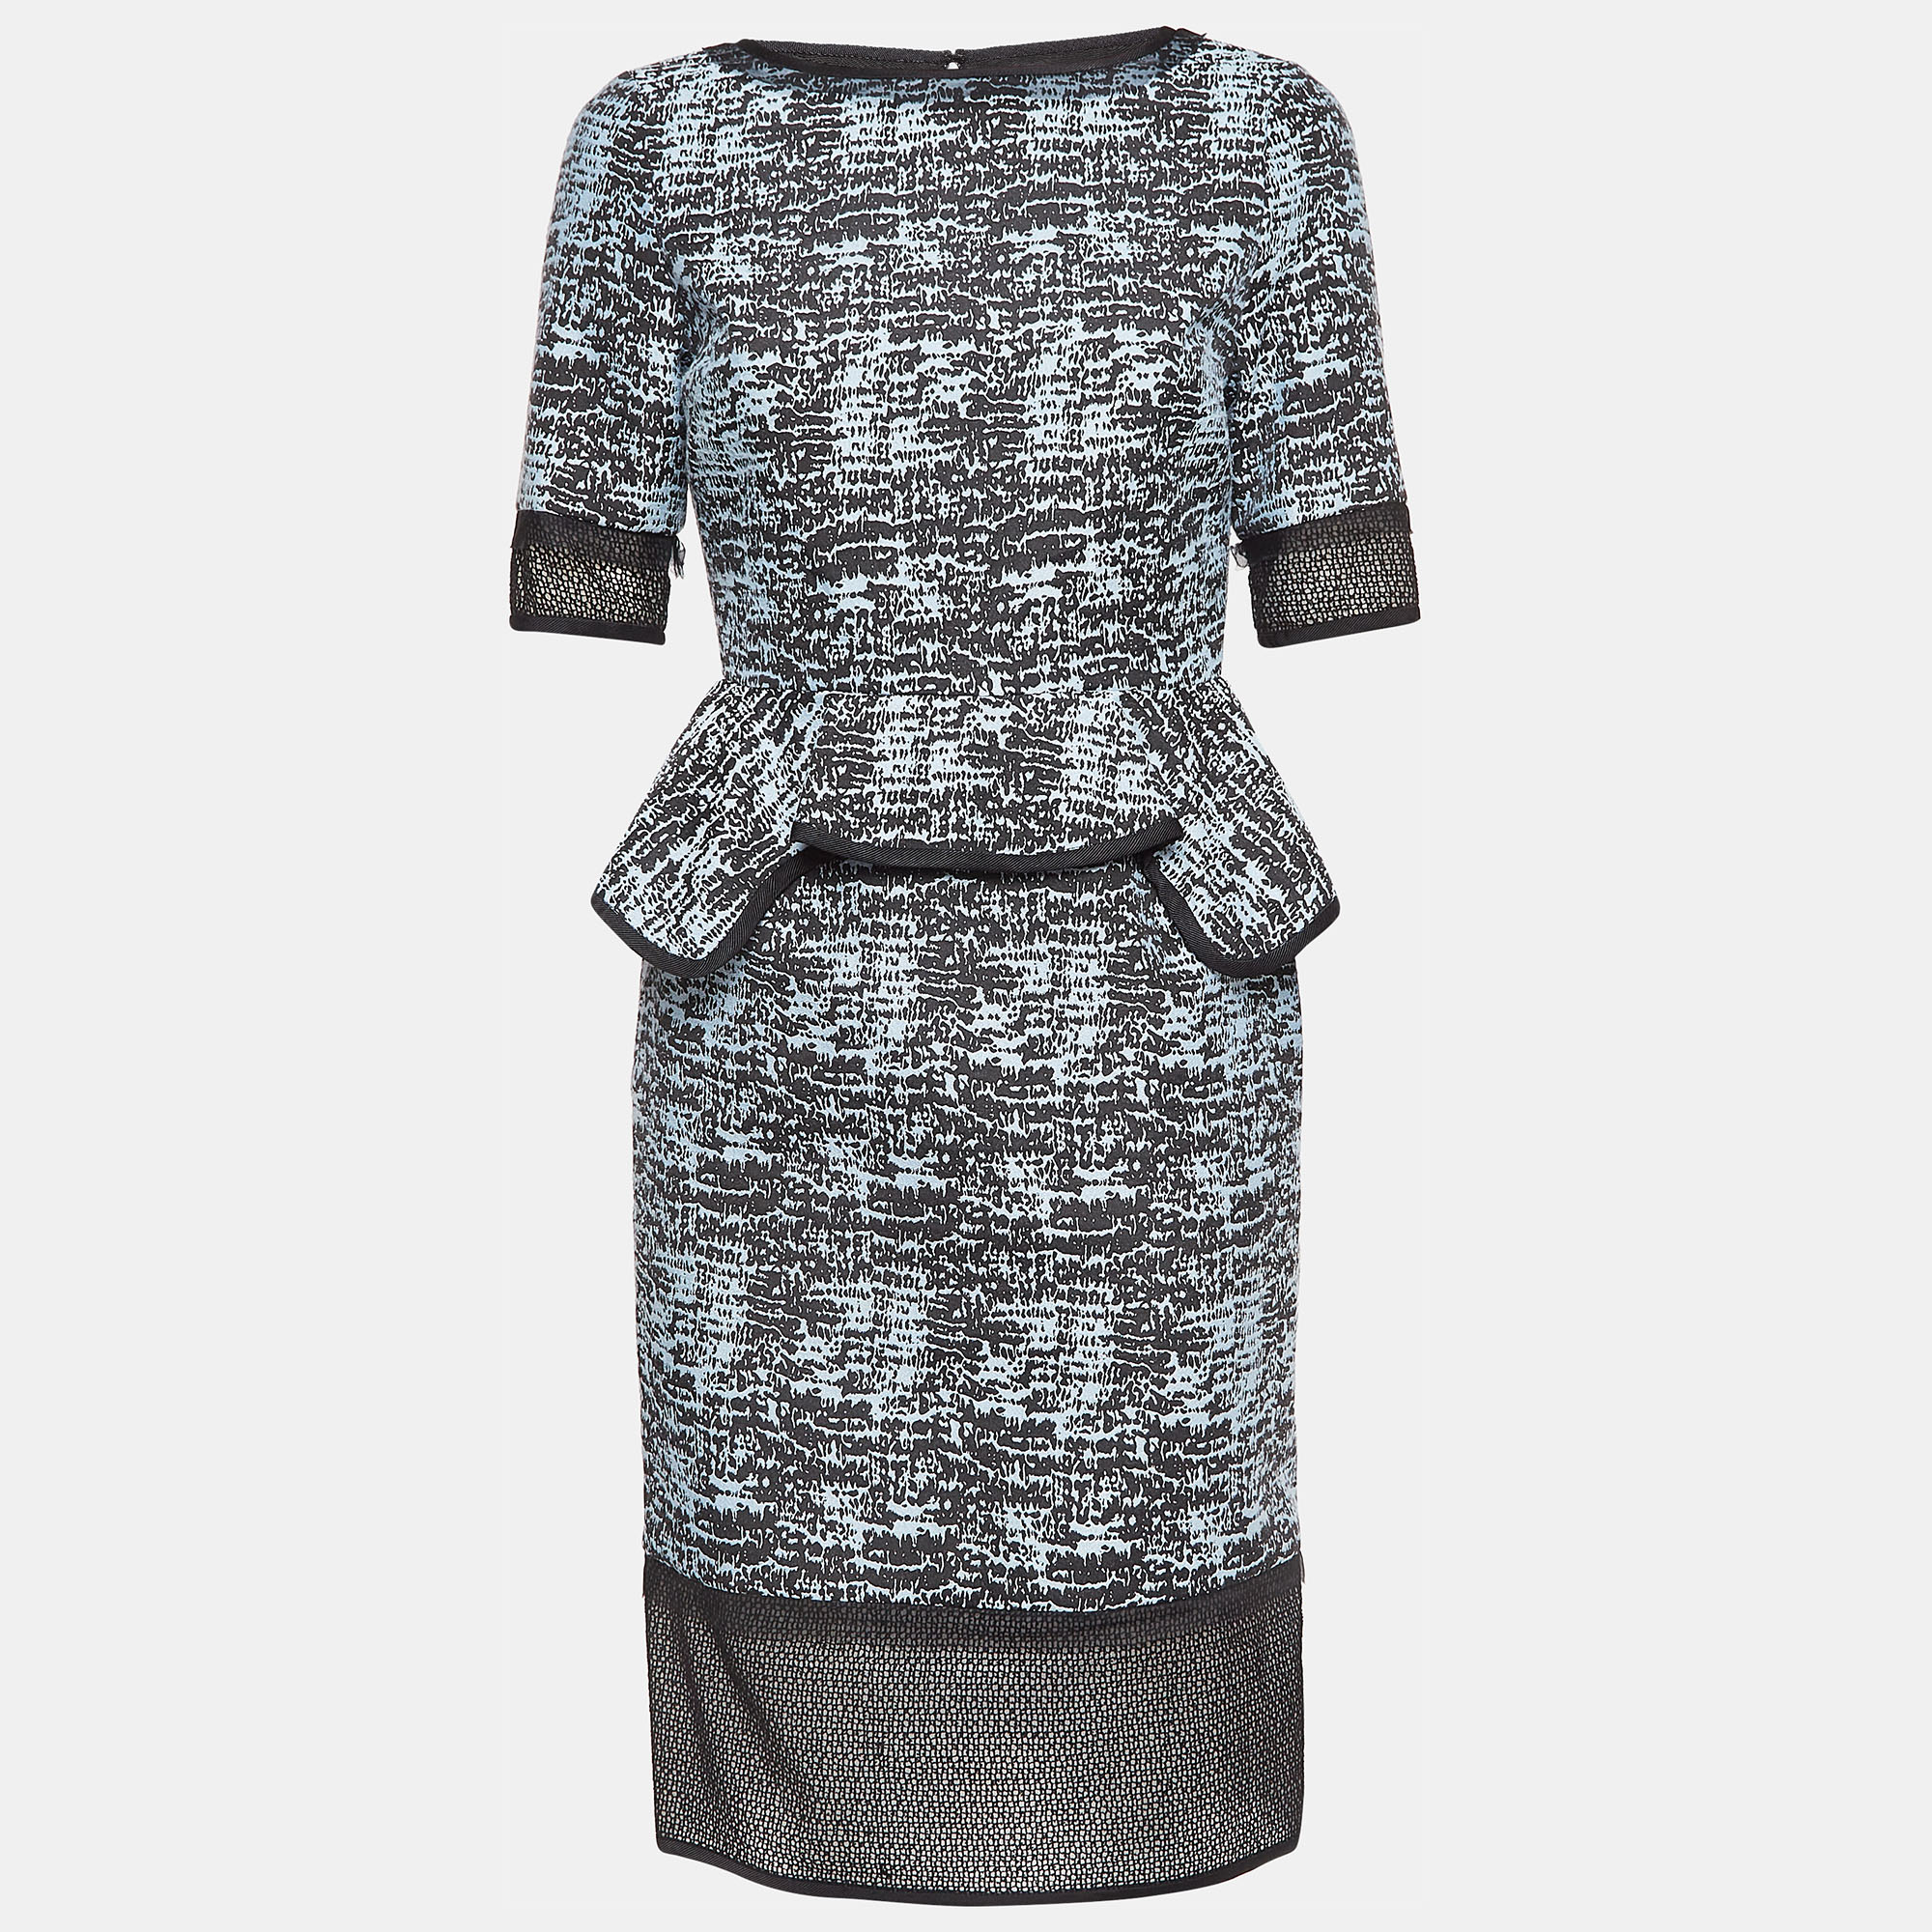 Jonathan simkhai blue/black patterned nylon and cotton short dress s